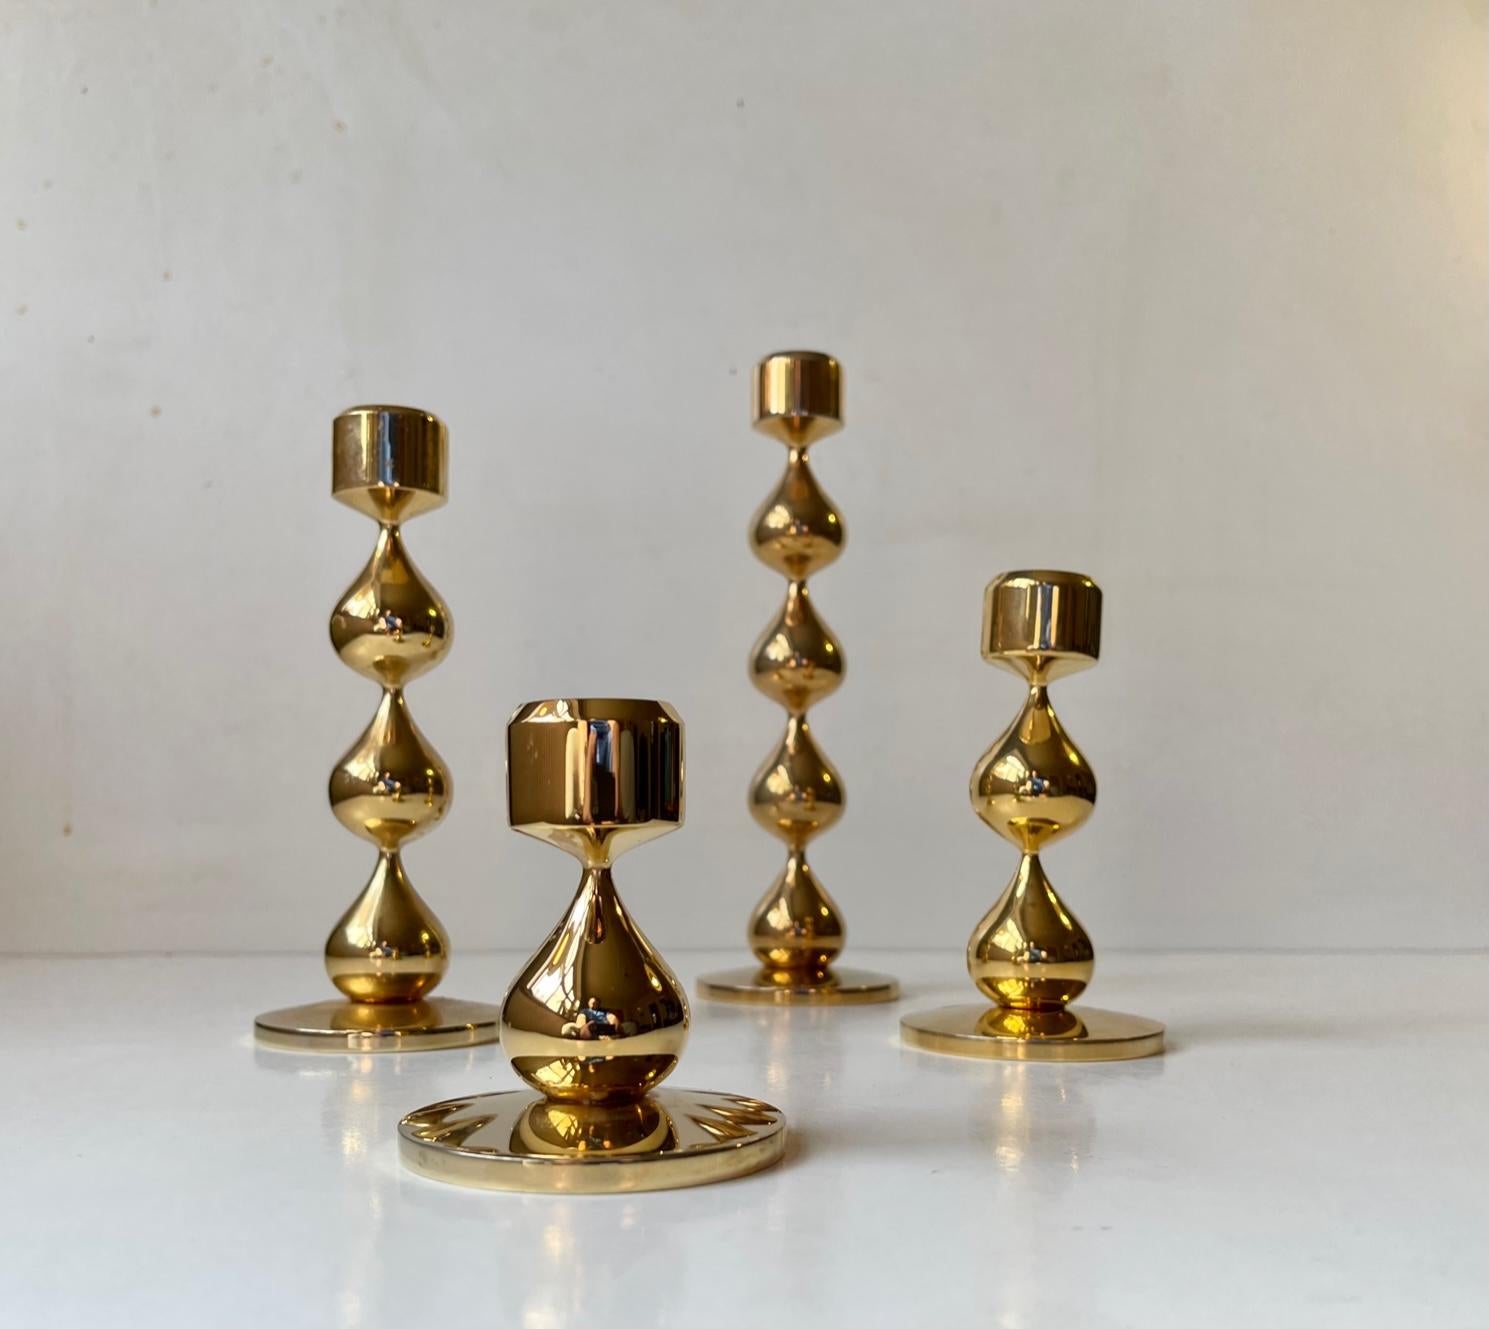 Scandinavian Modern 24-Carat Gold-Plated Teardrop Candlesticks by Hugo Asmussen 1